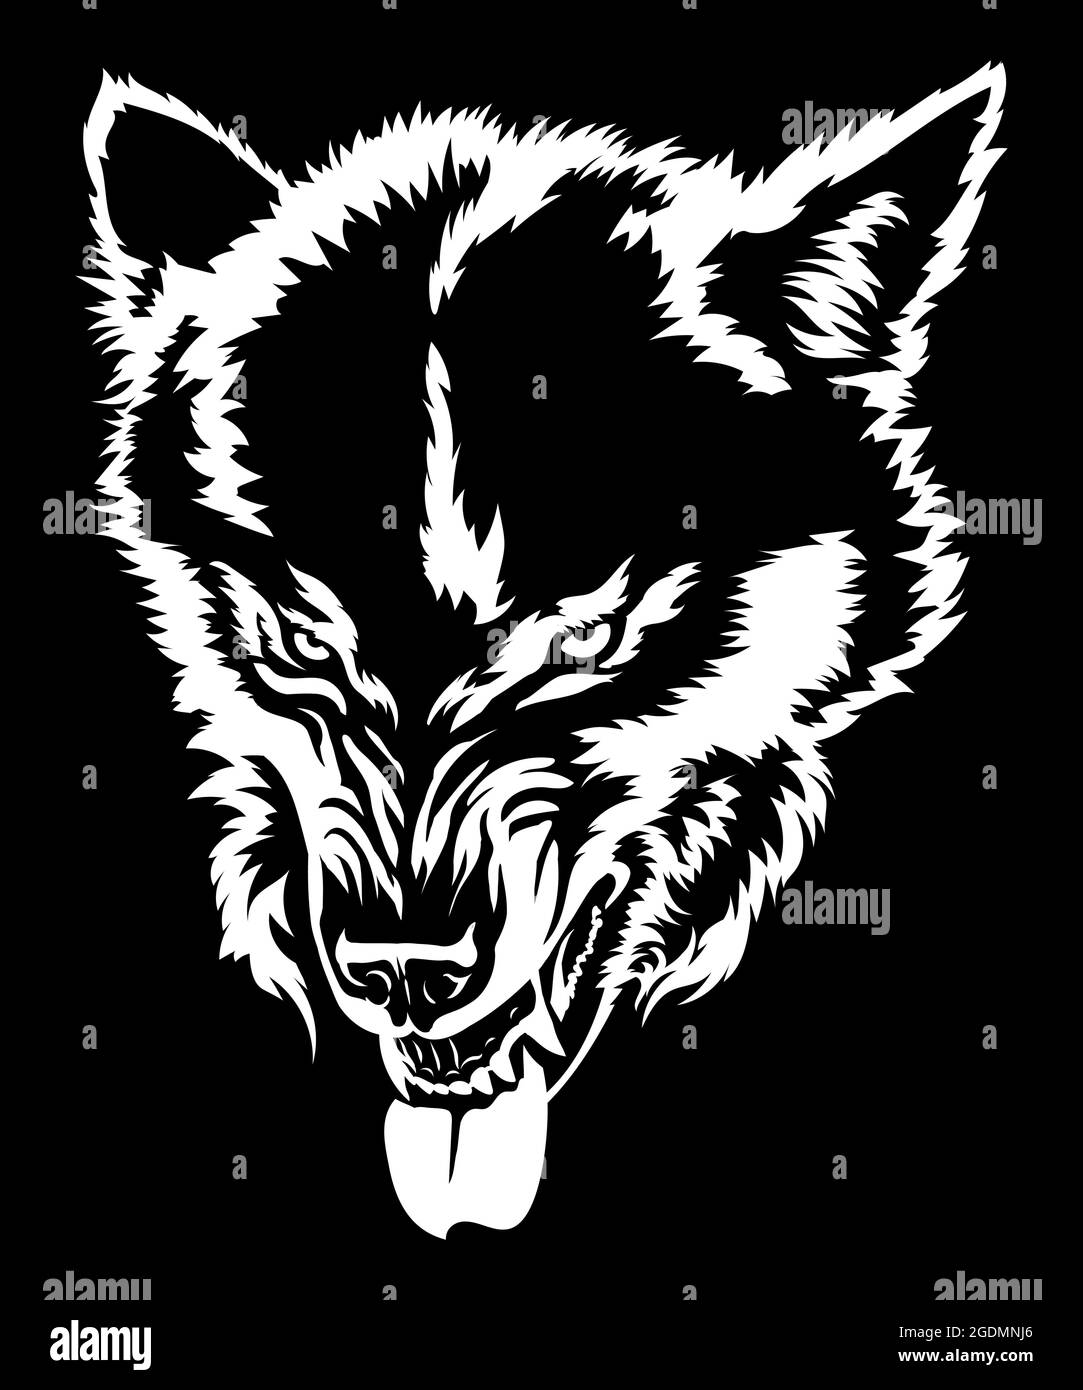 Le loup en colère montre les dents, le grin du loup, la tête du loup, le dessin noir et blanc pour le t-shirt. Dessin sur fond noir Illustration de Vecteur